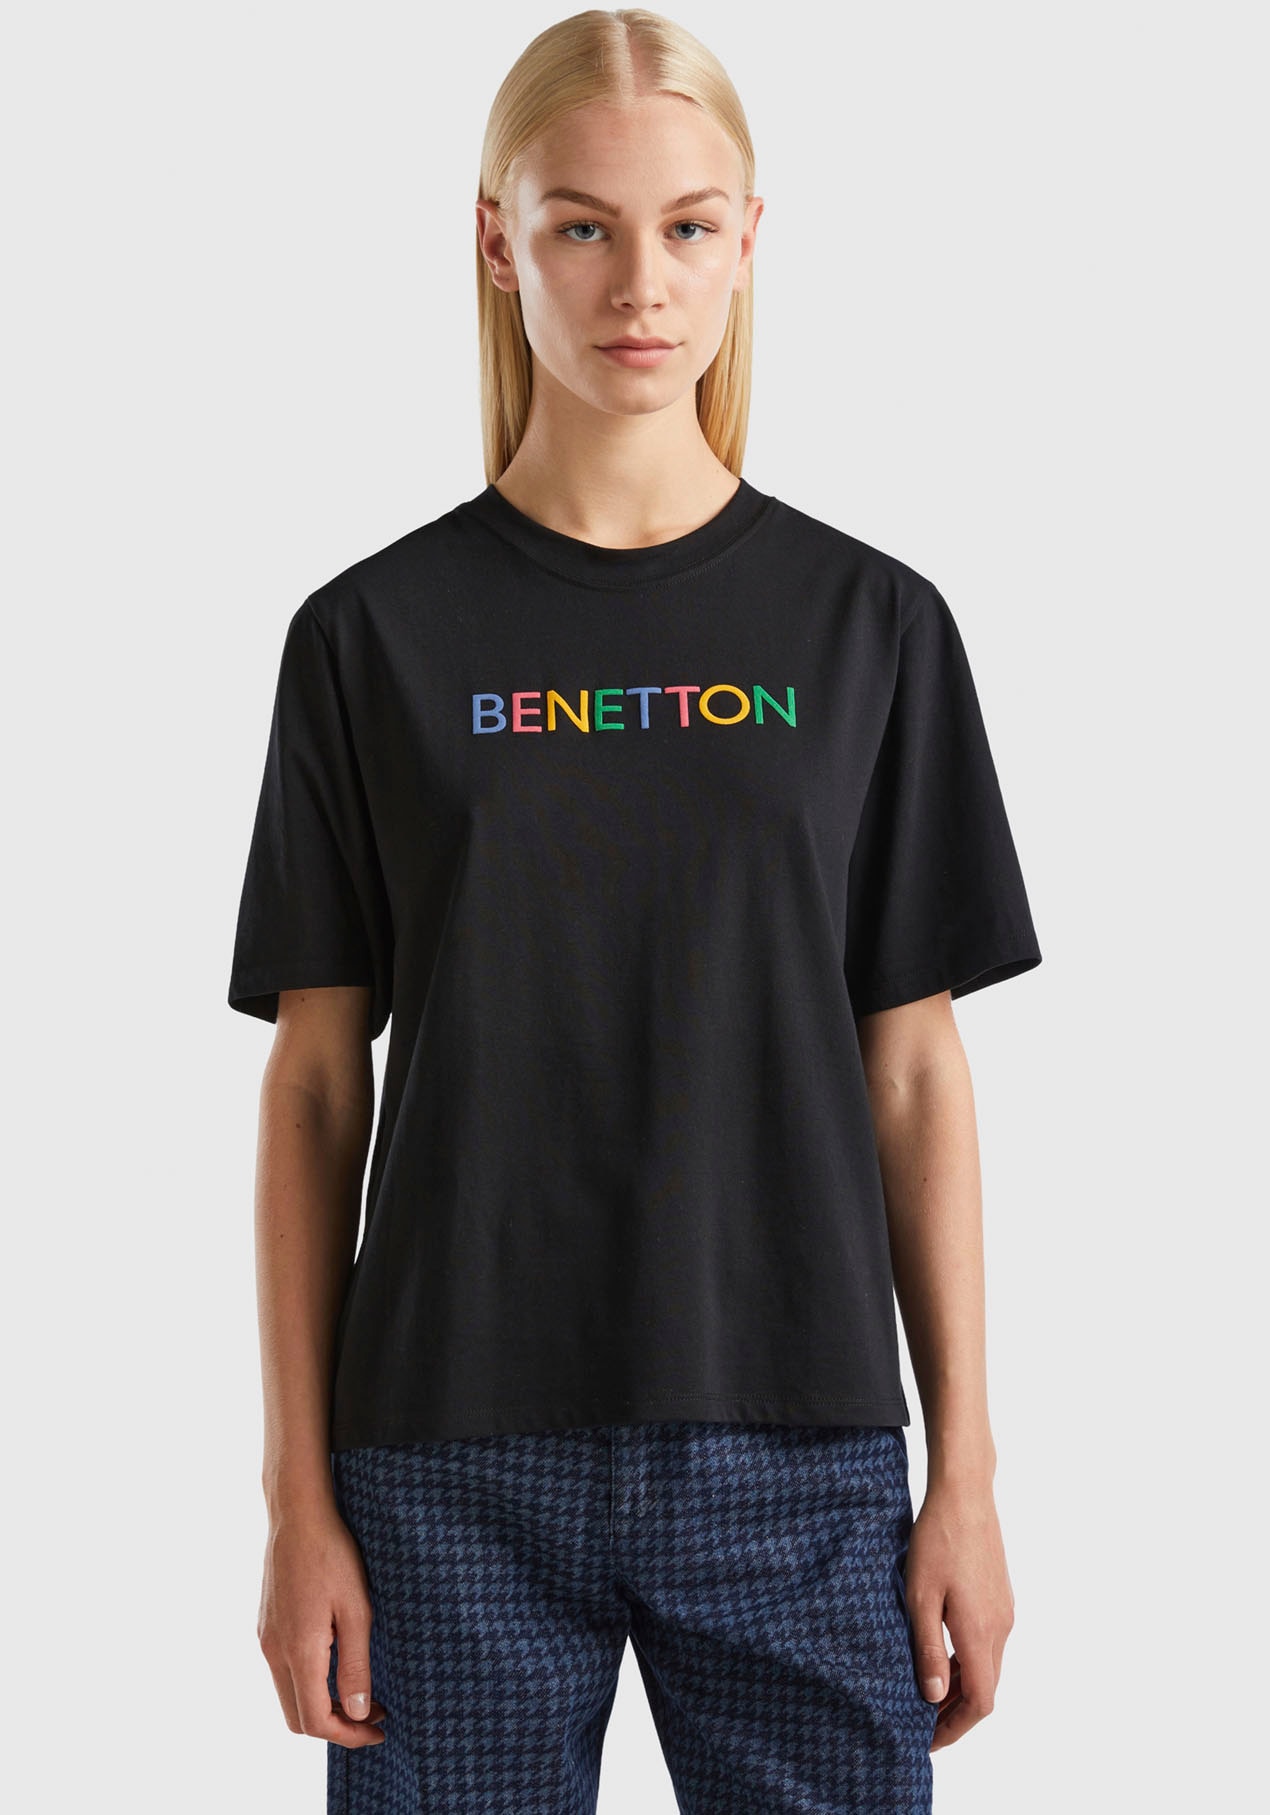 United mit Label-Schriftzug Benetton of ♕ bei T-Shirt, vorne Colors